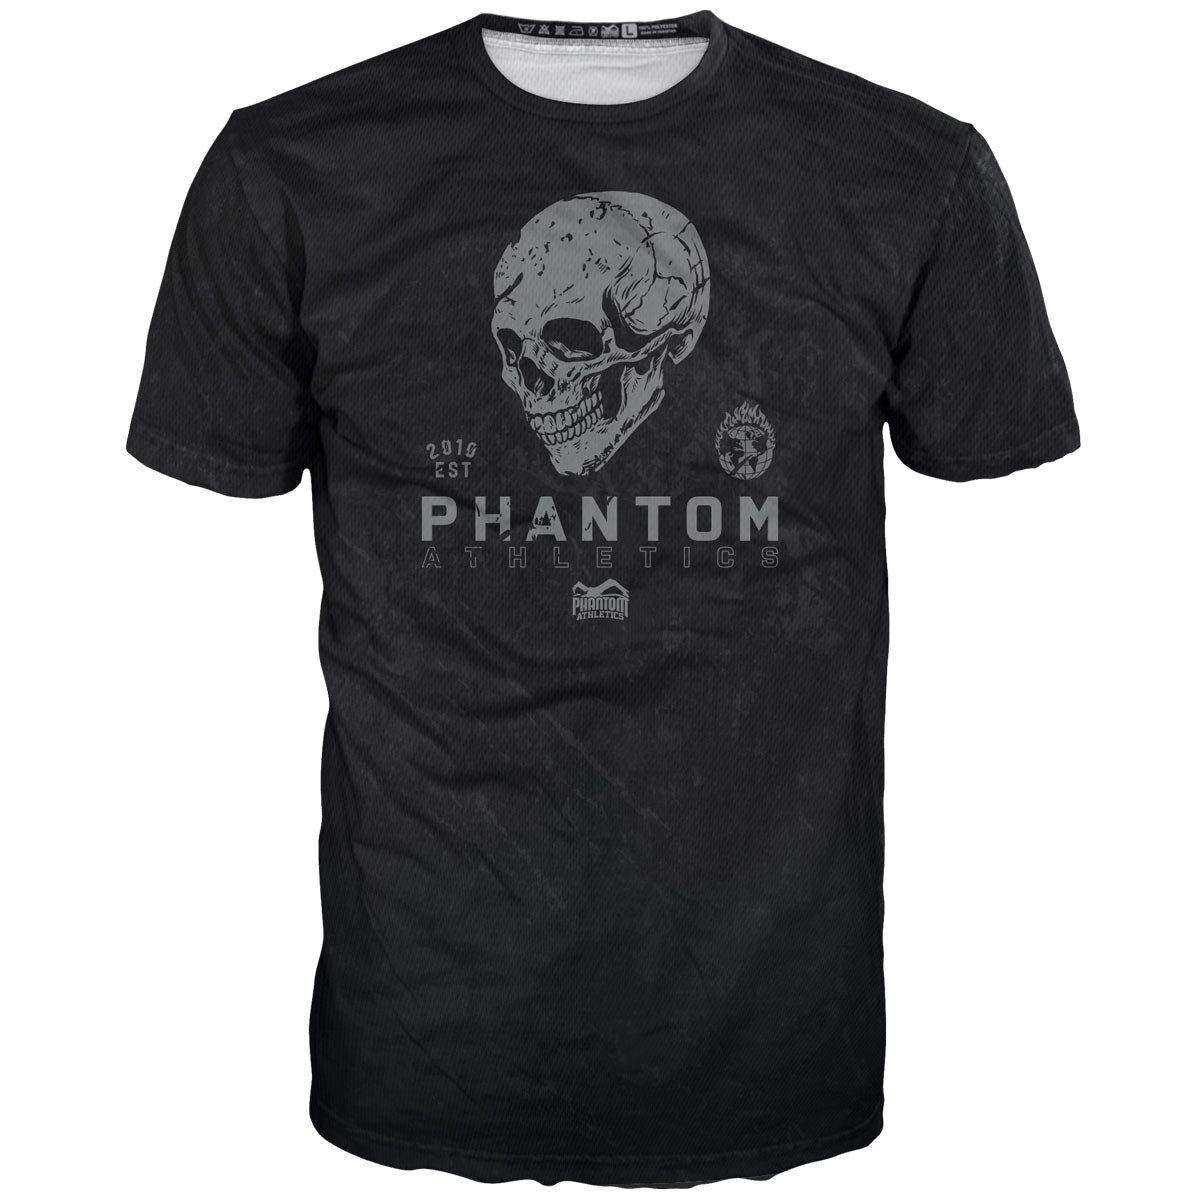 Phantom ФИГХТ мајица у дизајну лобање са лобањом. Идеално за ваш тренинг борилачких вештина. 